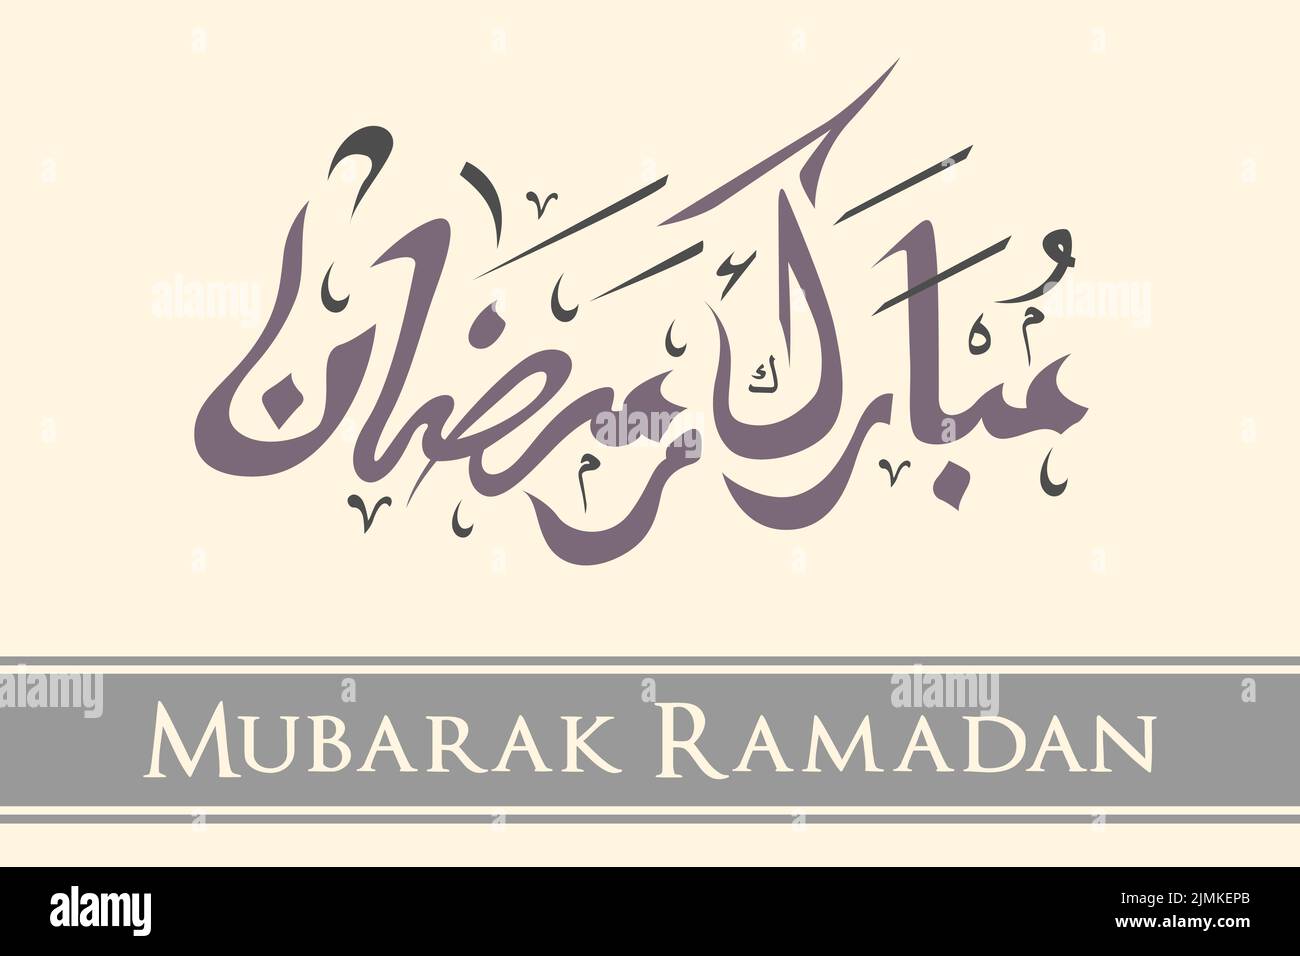 Mubarak Ramadan Writing Calligraphy Art Stock Vector